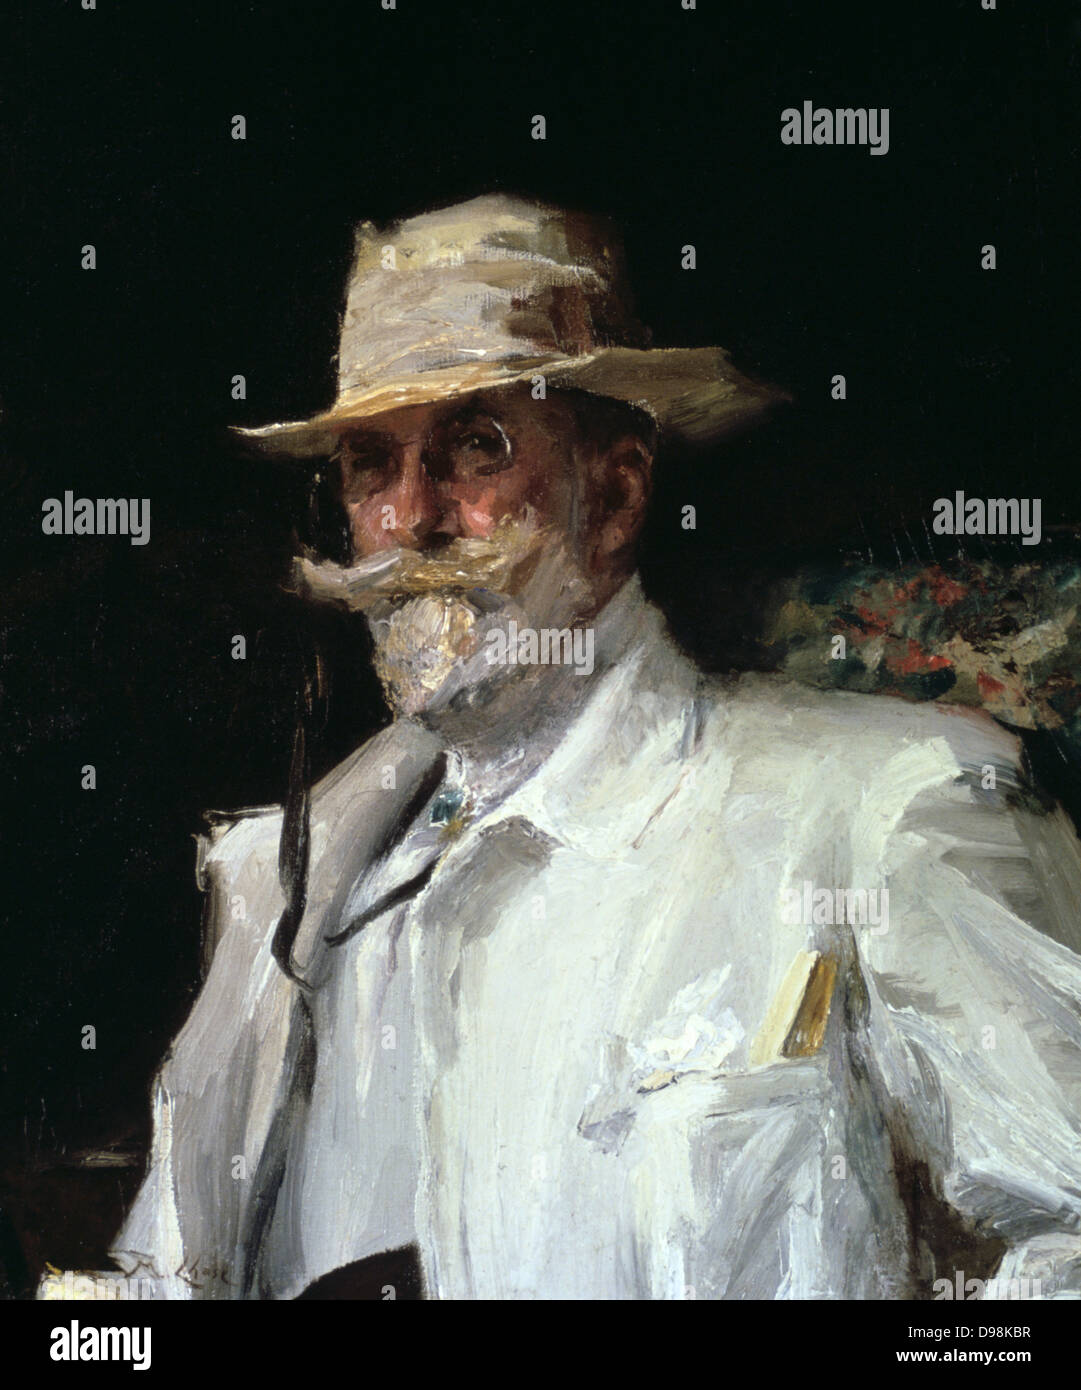 William Merritt Chase (1849-1916) peintre impressionniste américain et enseignant. Annie Lang (19ème siècle) peintre américain. Portrait de mi-longueur de la Chase en blanc sur un fond sombre. Pince-nez Moustache Barbe flamboyante du chapeau de paille Banque D'Images